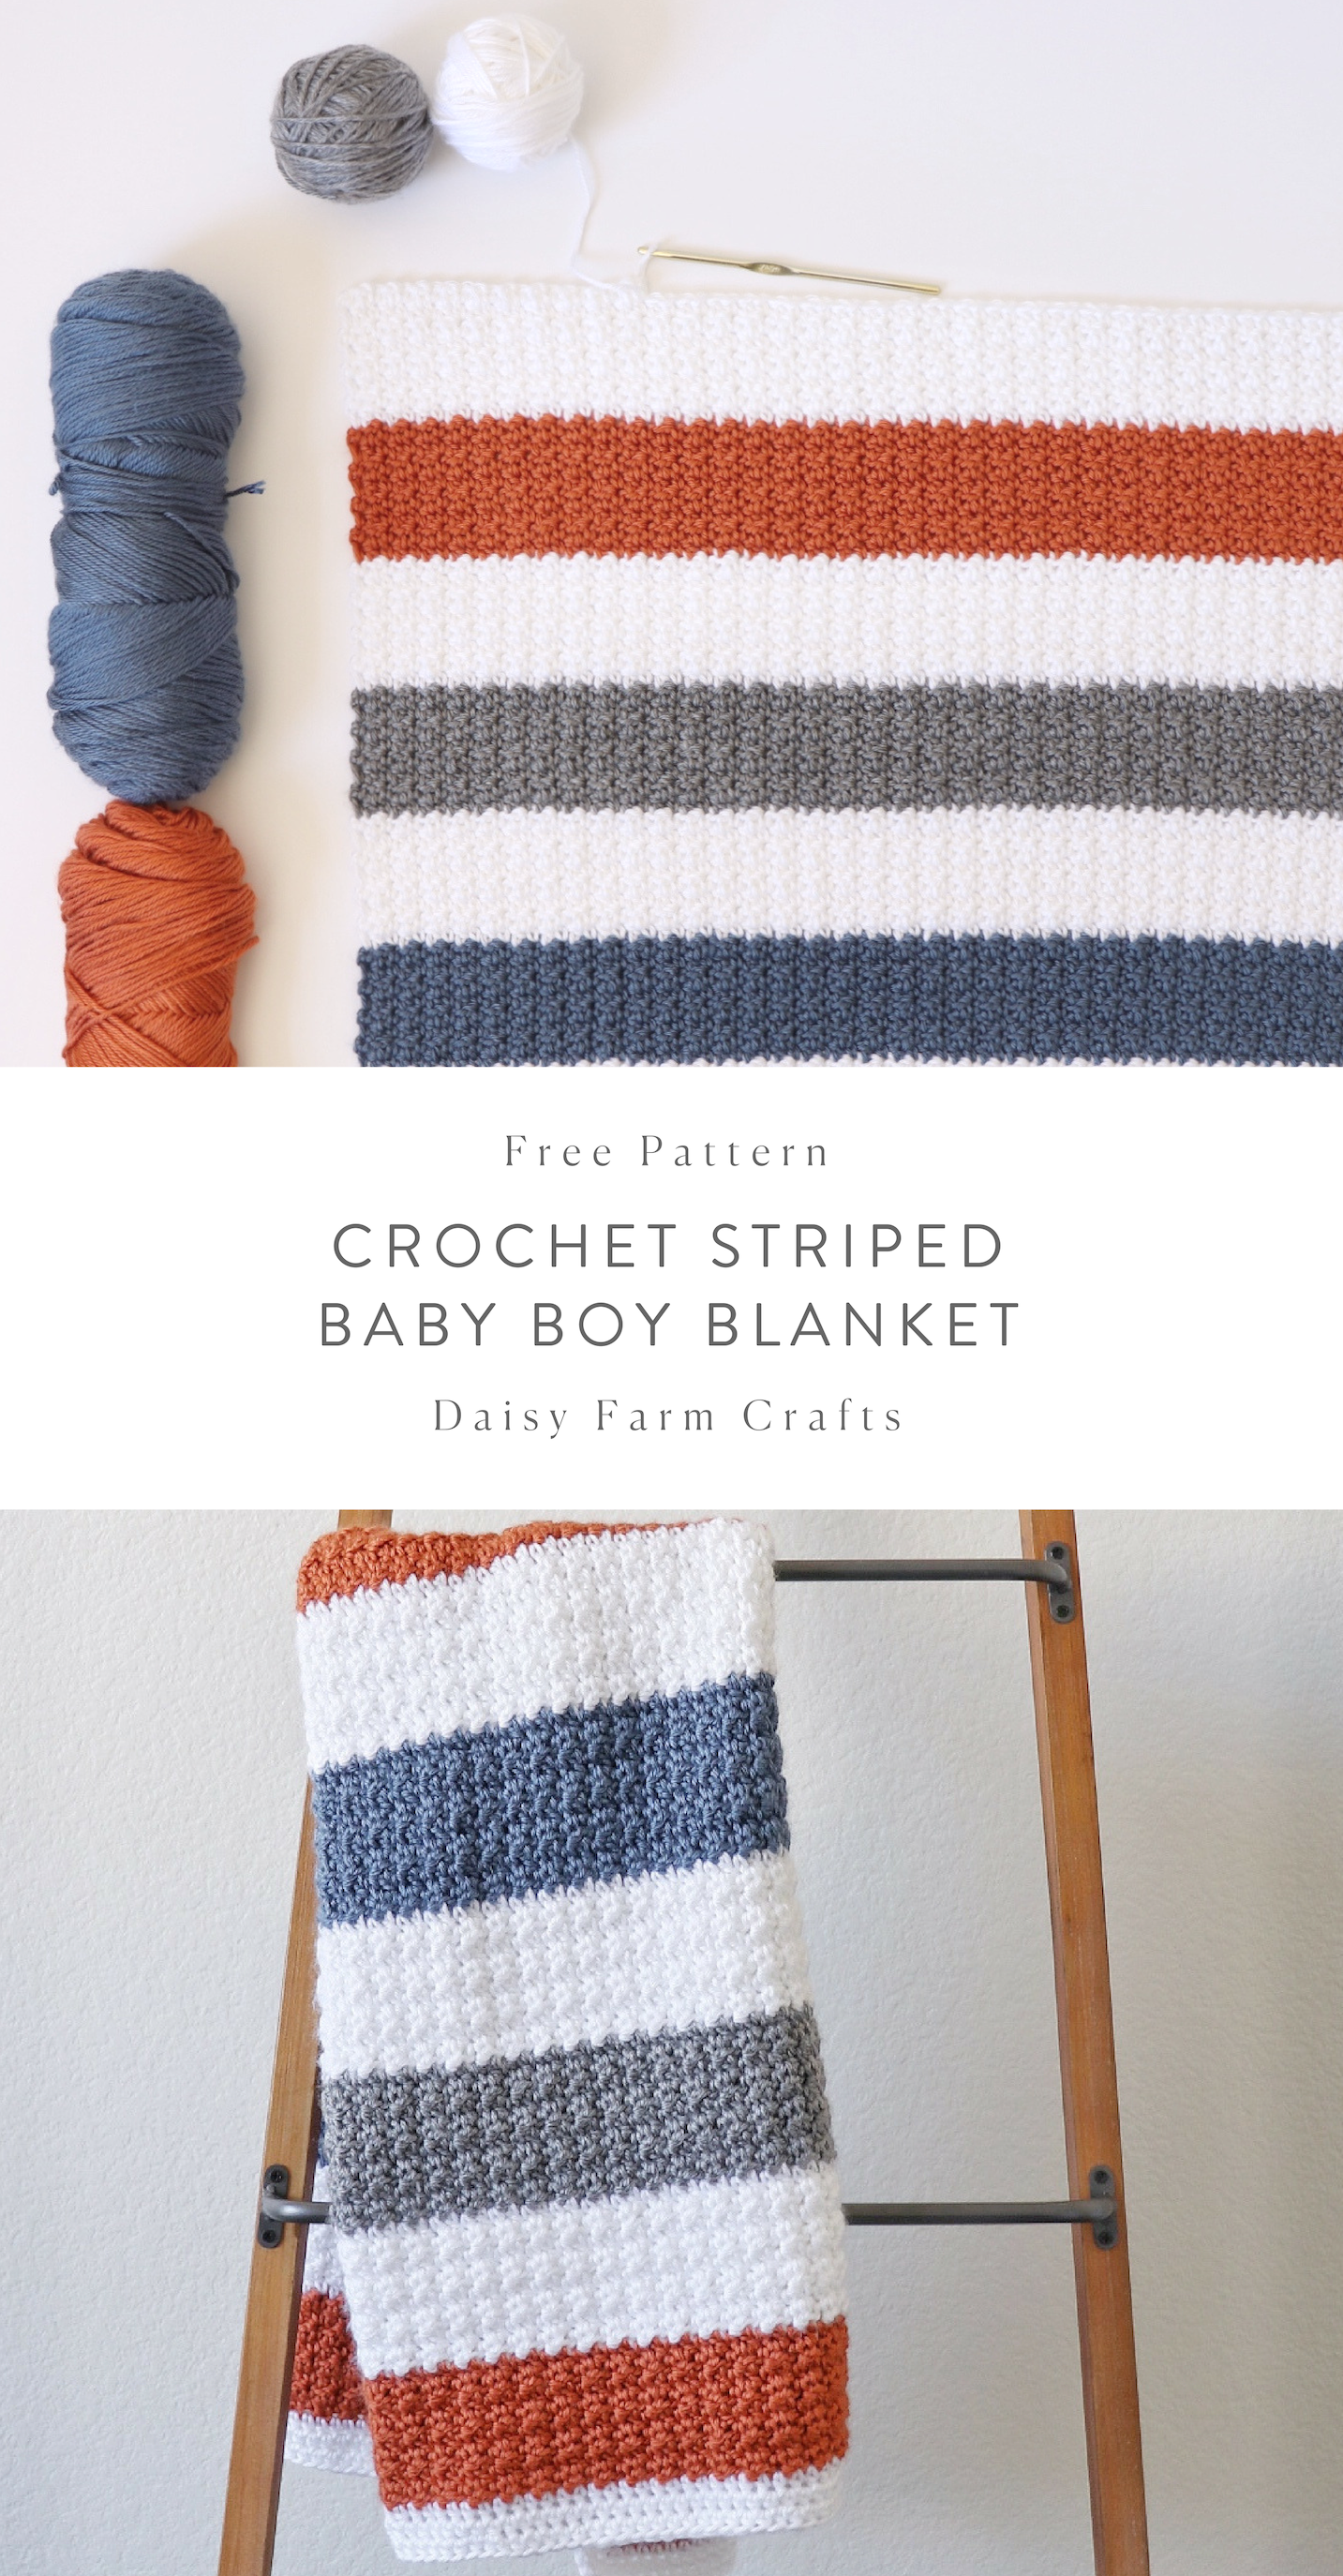 Free Pattern – Crochet Striped Baby Boy Blanket